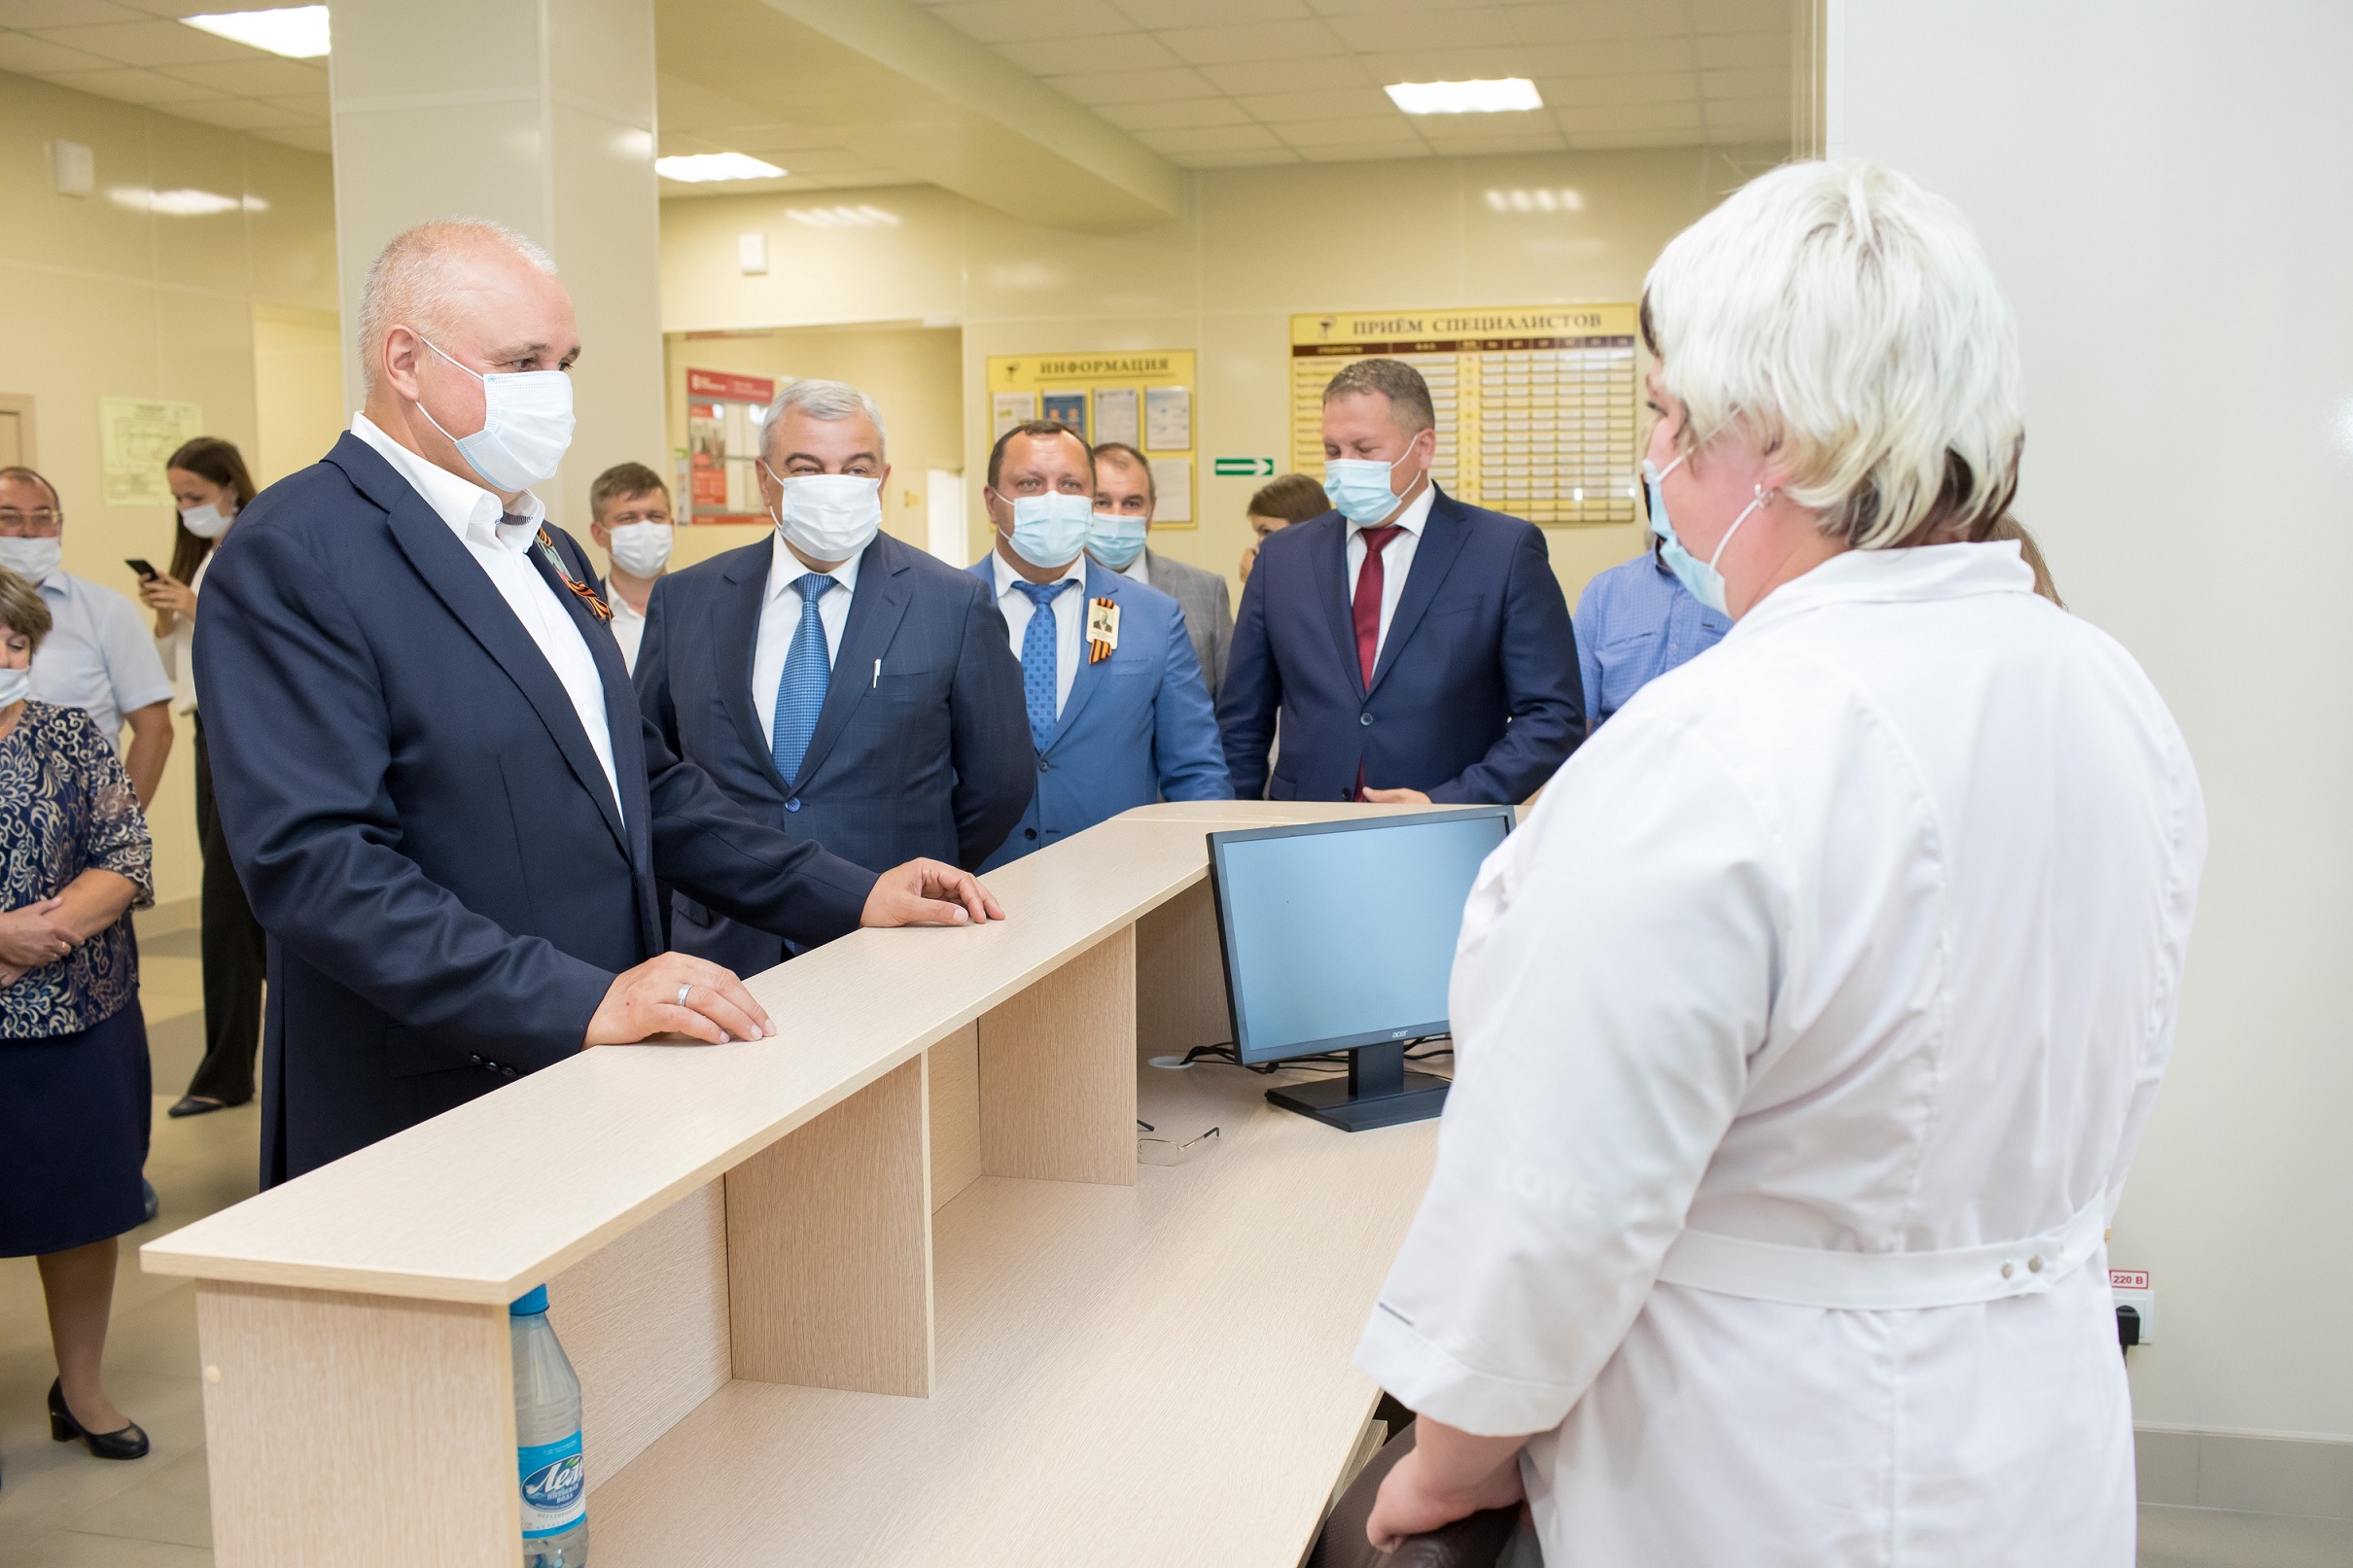 Для здоровья земляков: новую поликлинику прокопчанам построили разрез Березовский и Шахта №12. Стройсервис